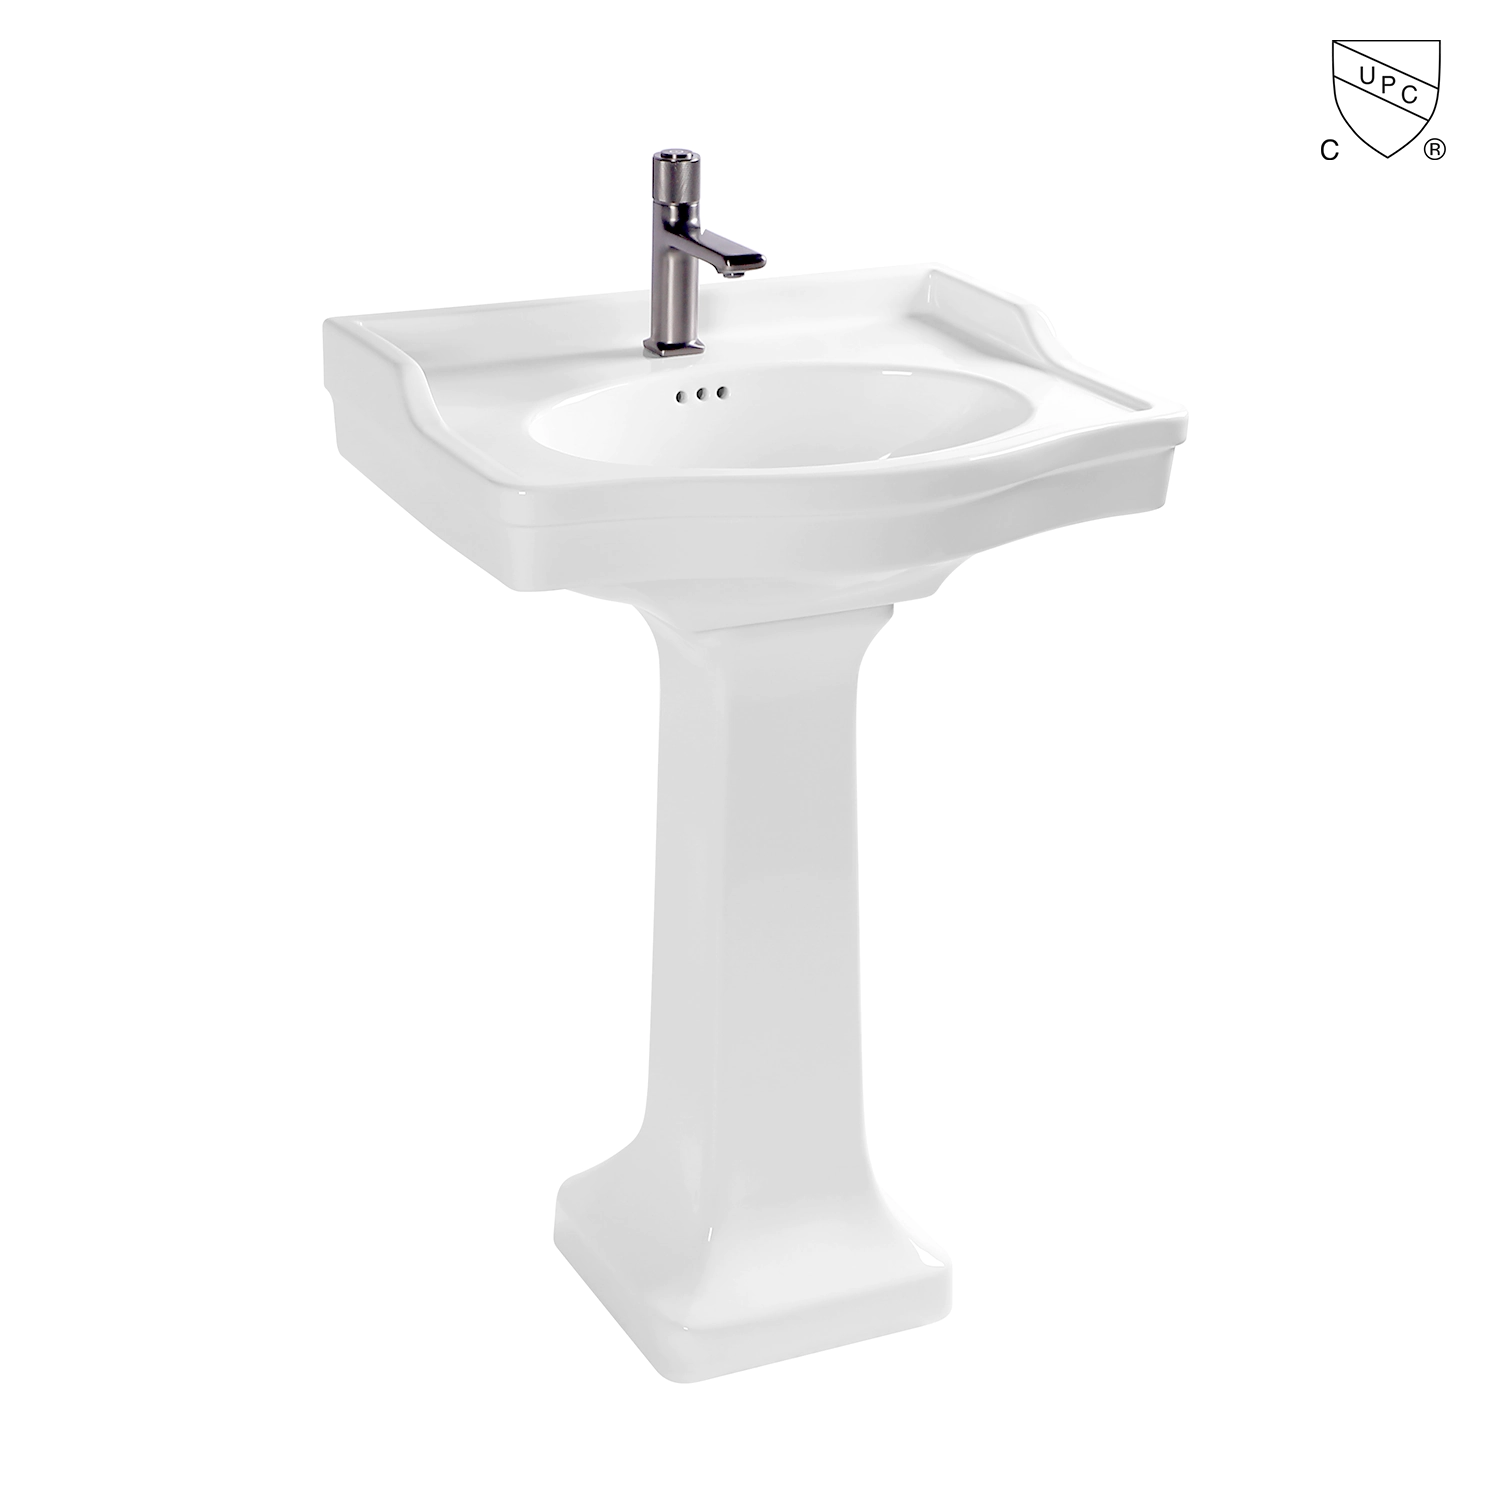 new pedestal sink faucet